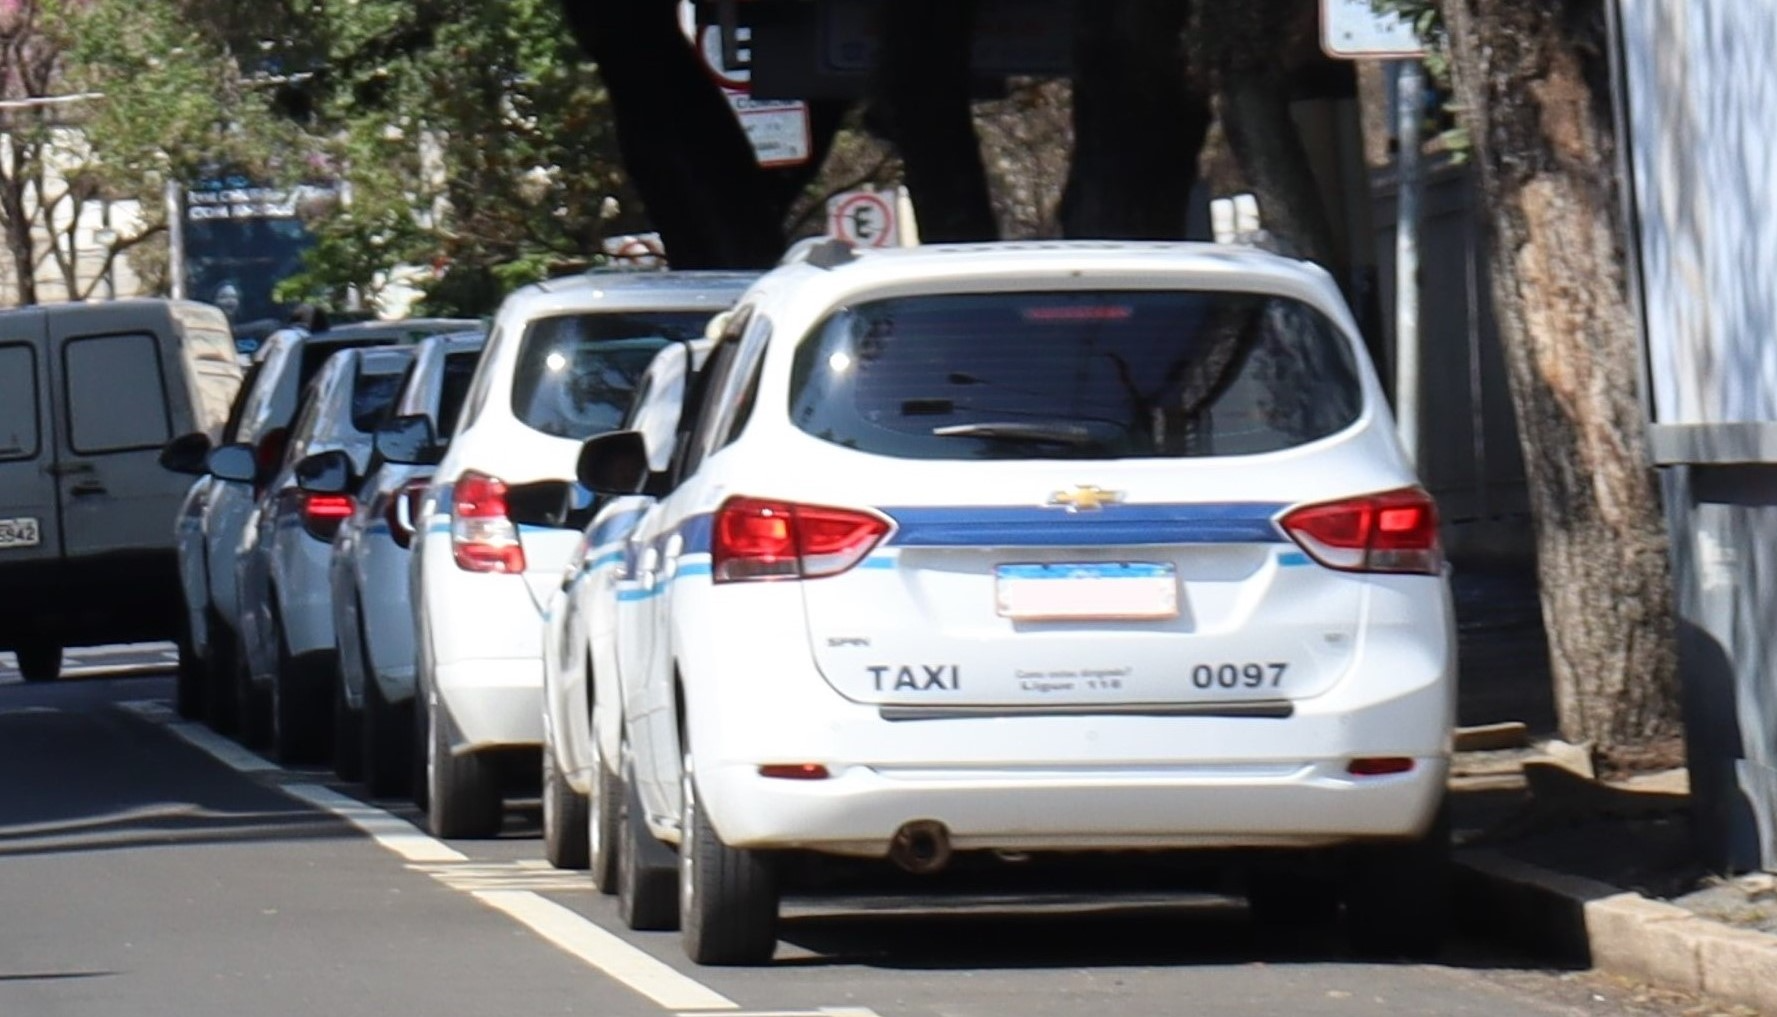 Tarifa de táxi aumenta em Campinas a partir deste sábado 